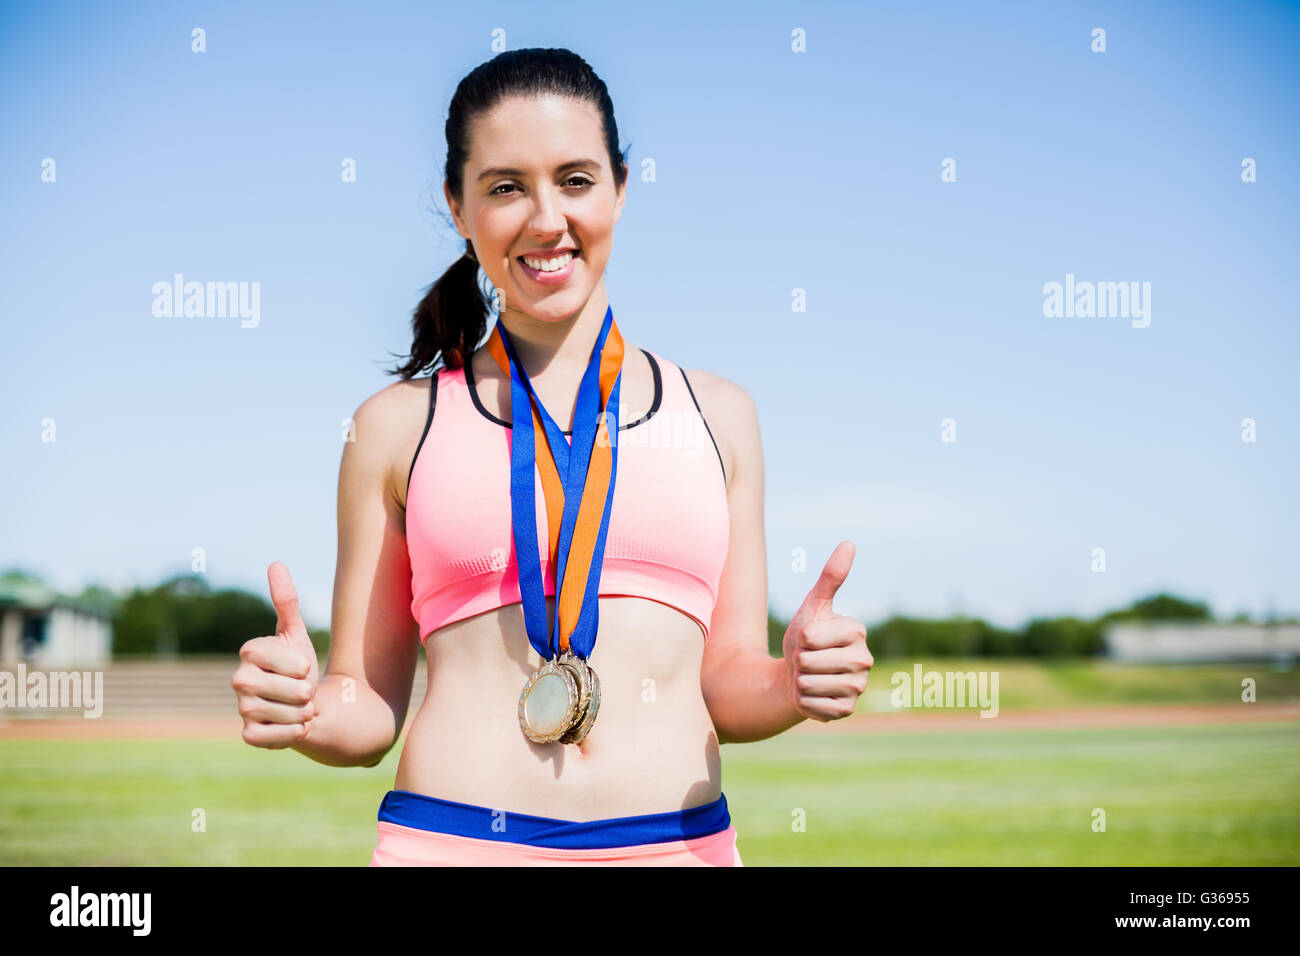 Athlète féminin avec des médailles d'or autour du cou Banque D'Images